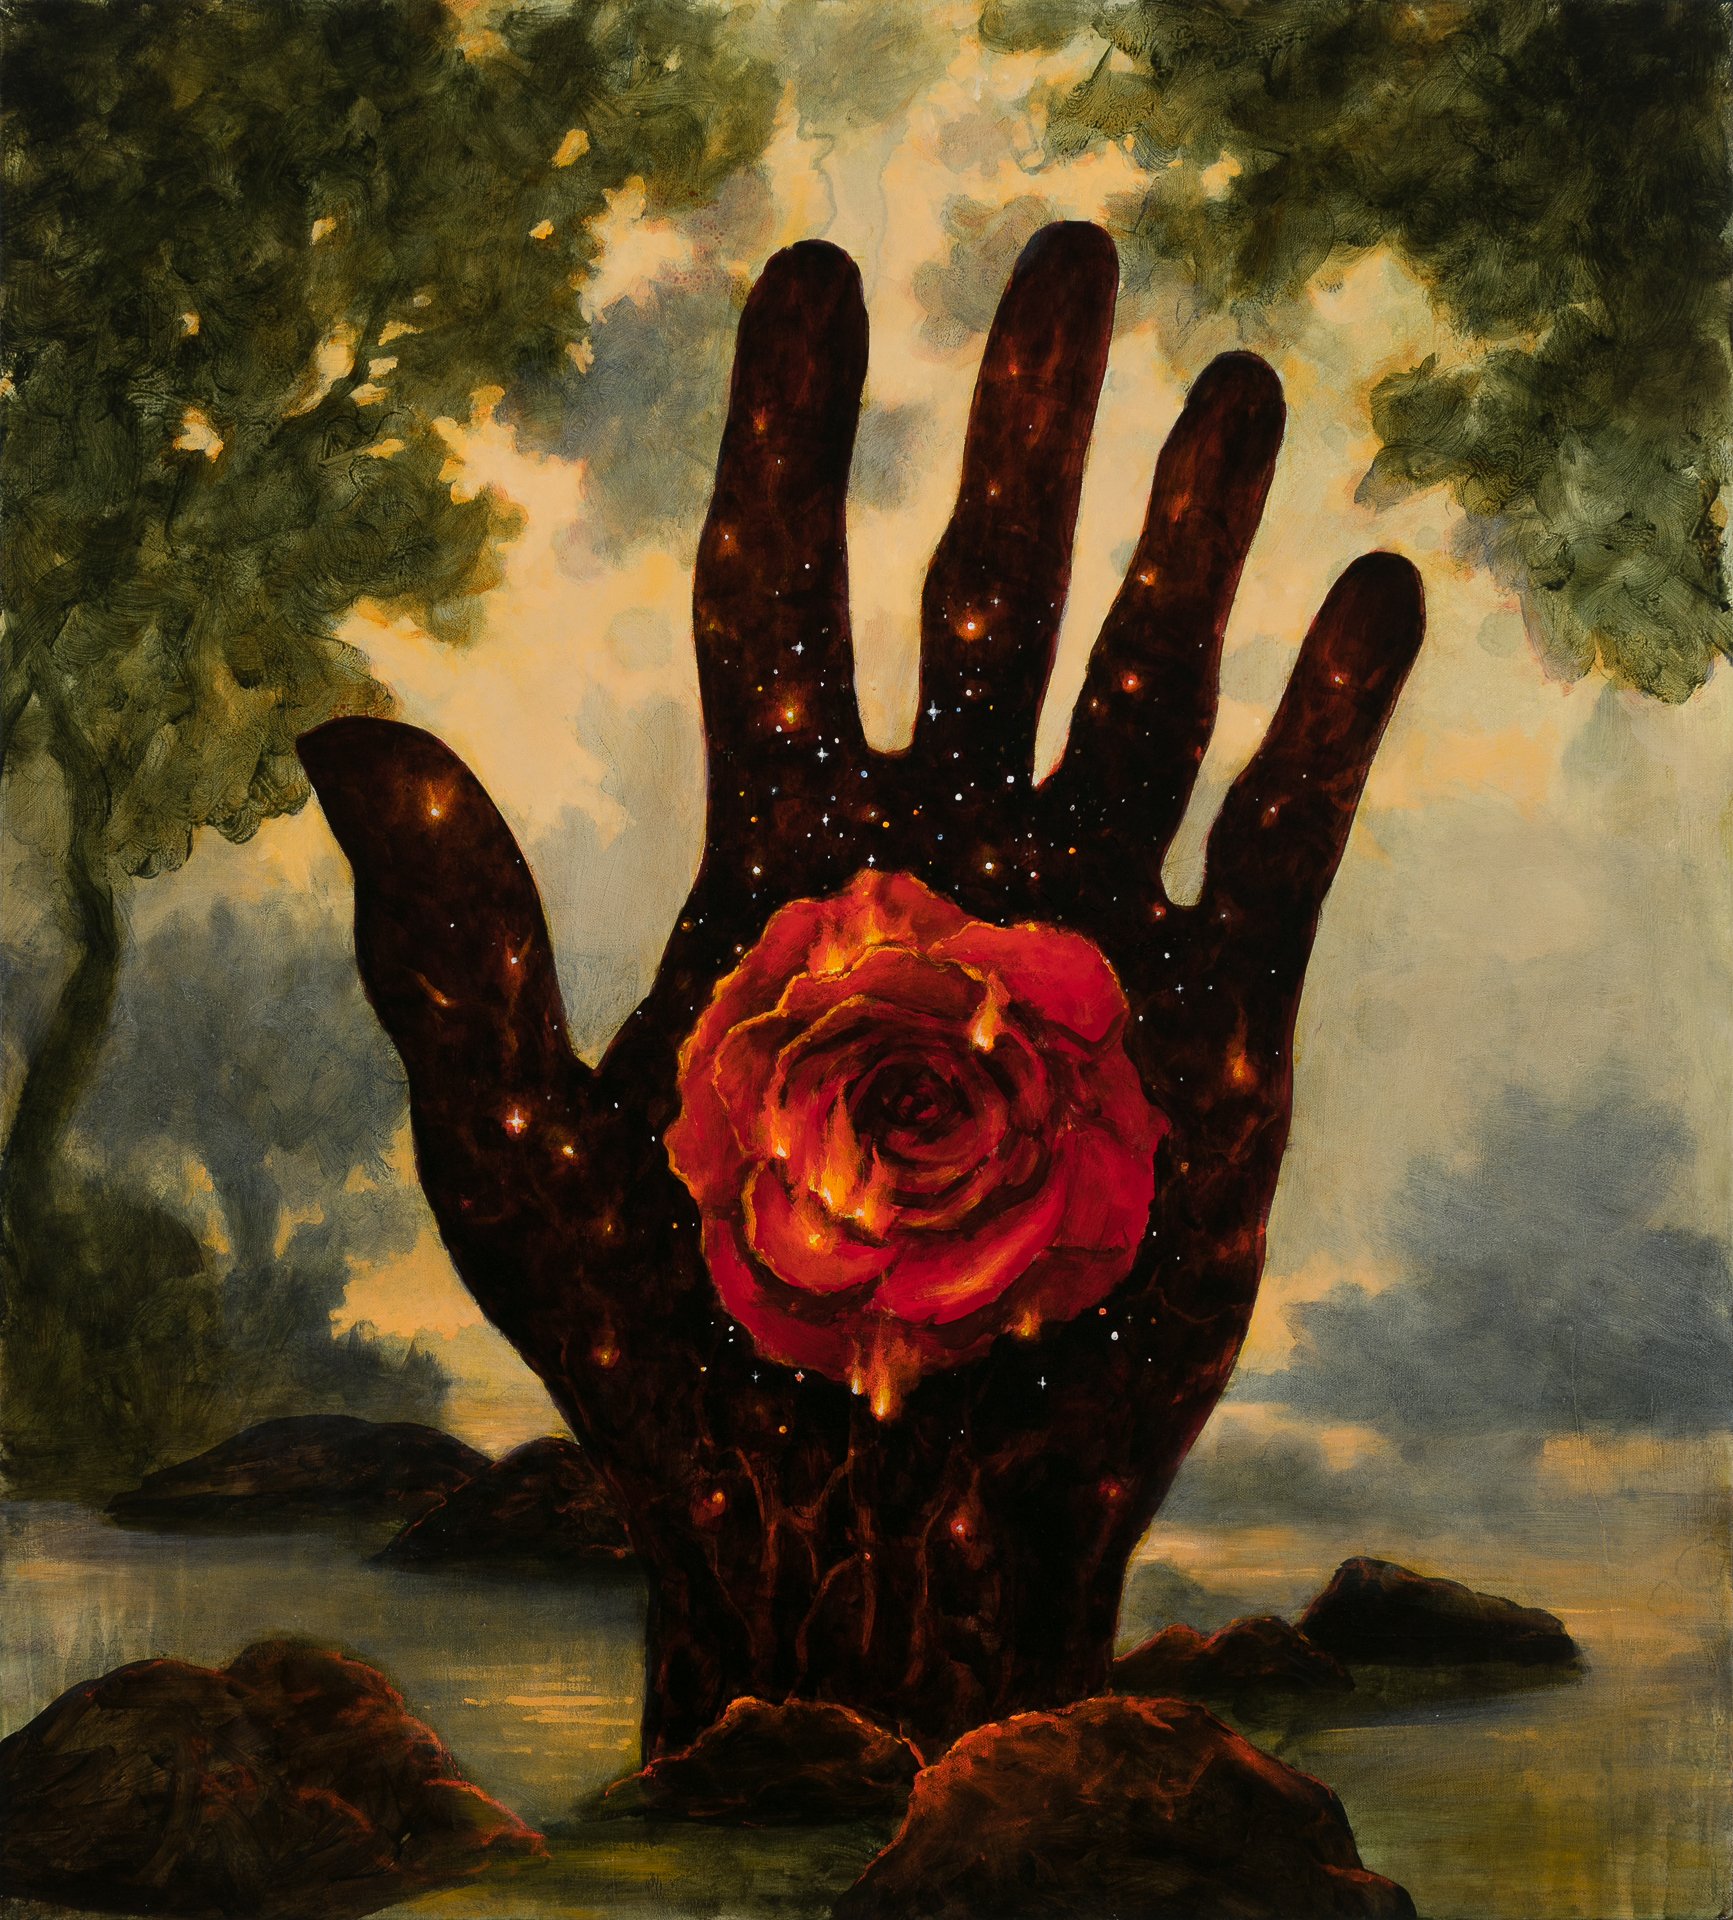 Hand of an Artist, 40"x36", acrylic on canvas